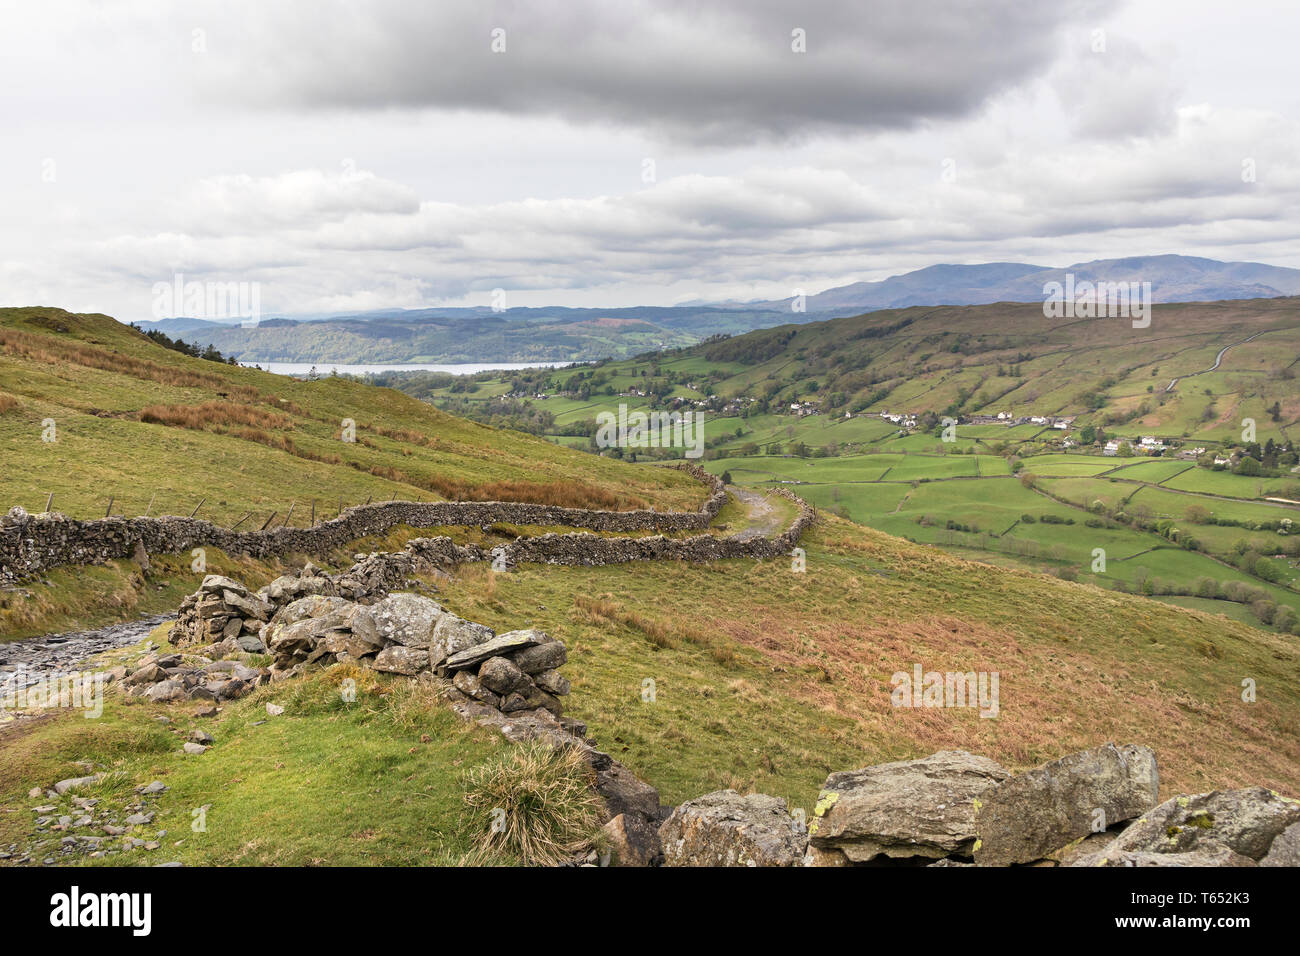 Troutbeck y Windermere Garburn vistos desde la carretera (Pista), Lake District, Cumbria, Reino Unido Foto de stock